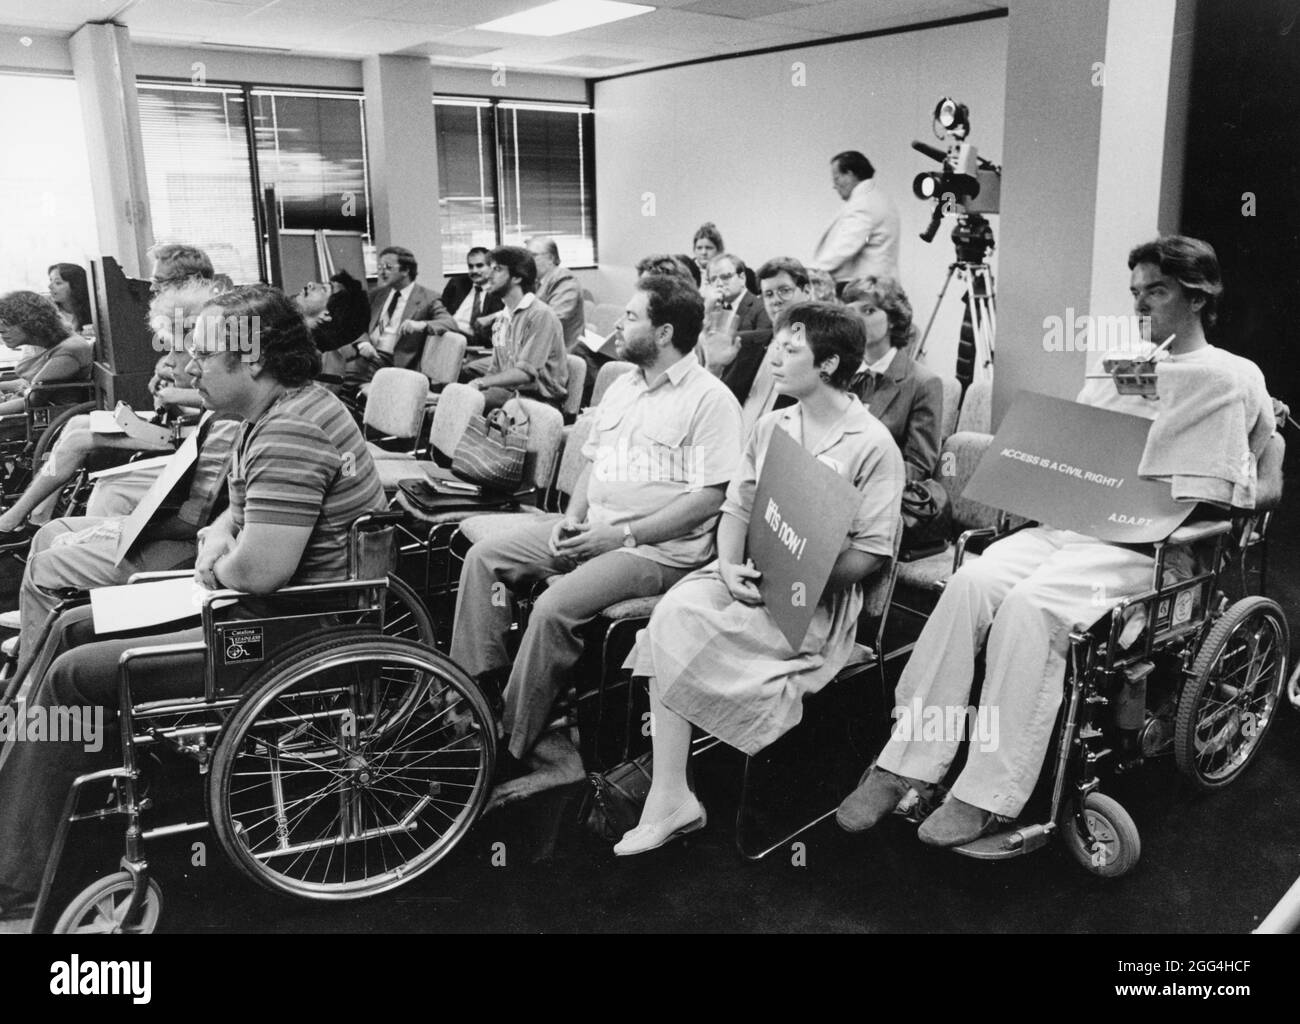 1987: Les membres de la communauté handicapée viennent en force à la réunion du conseil des transports de la ville pour préconiser un service d'autobus plus accessible. Banque D'Images